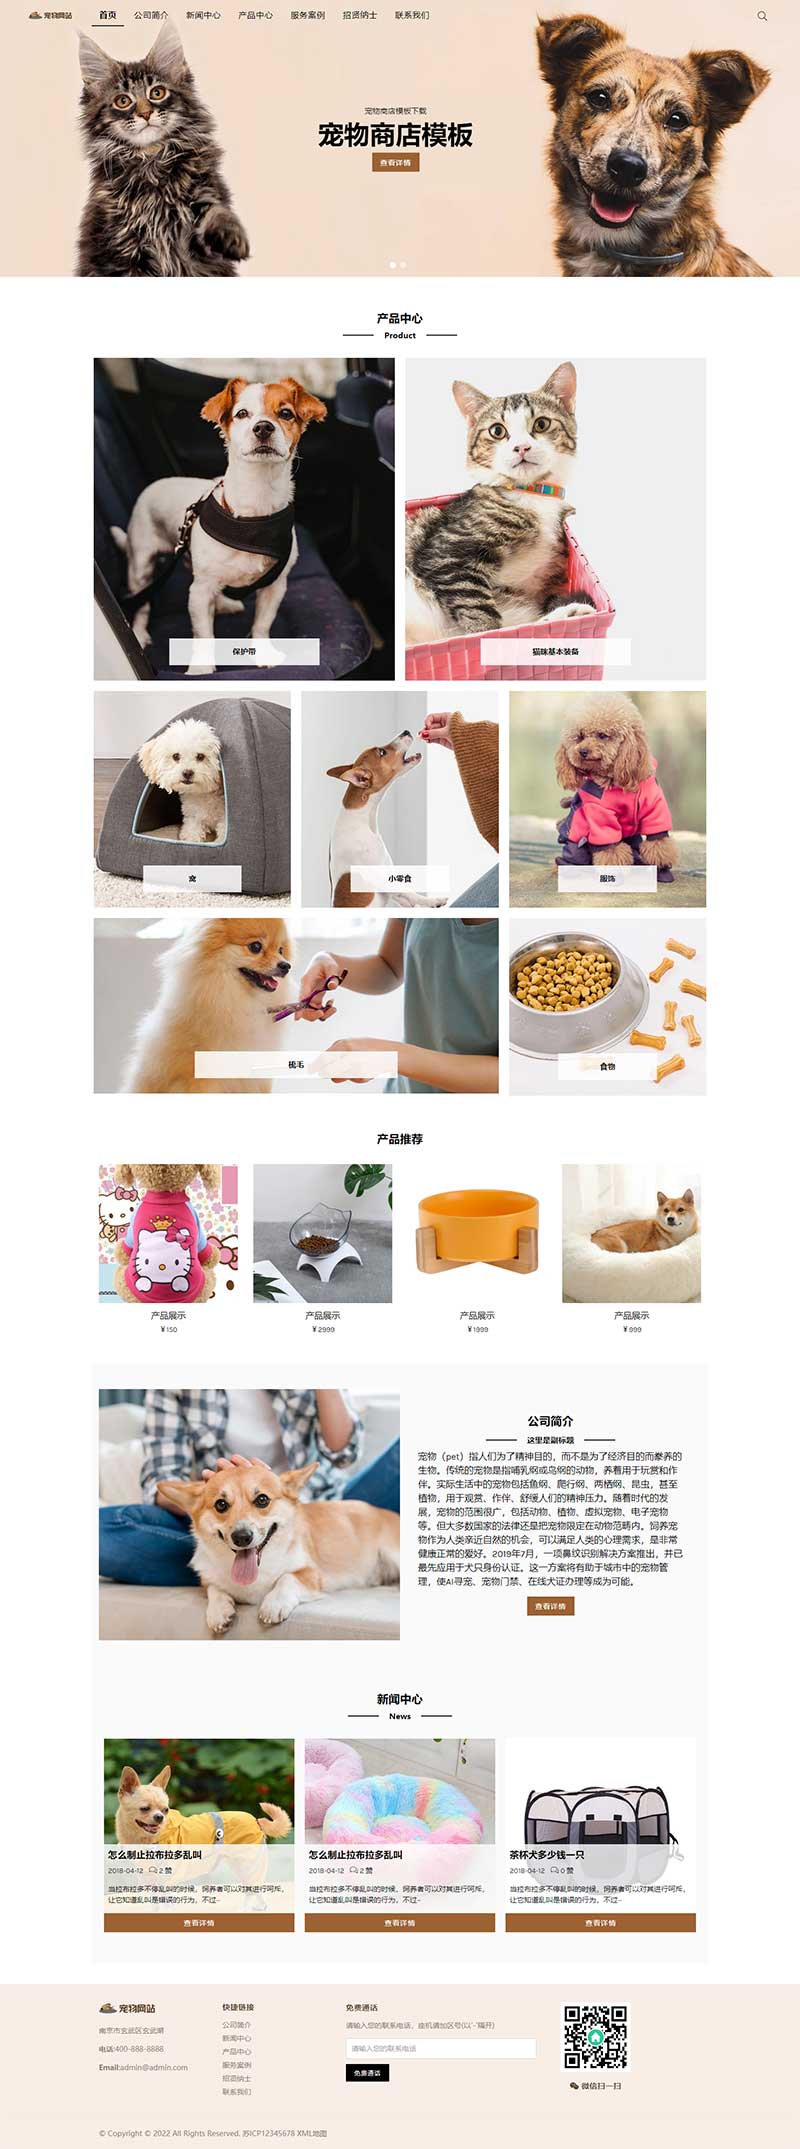 宠物商店宠物装备类网站模板 宠物网站源码下载